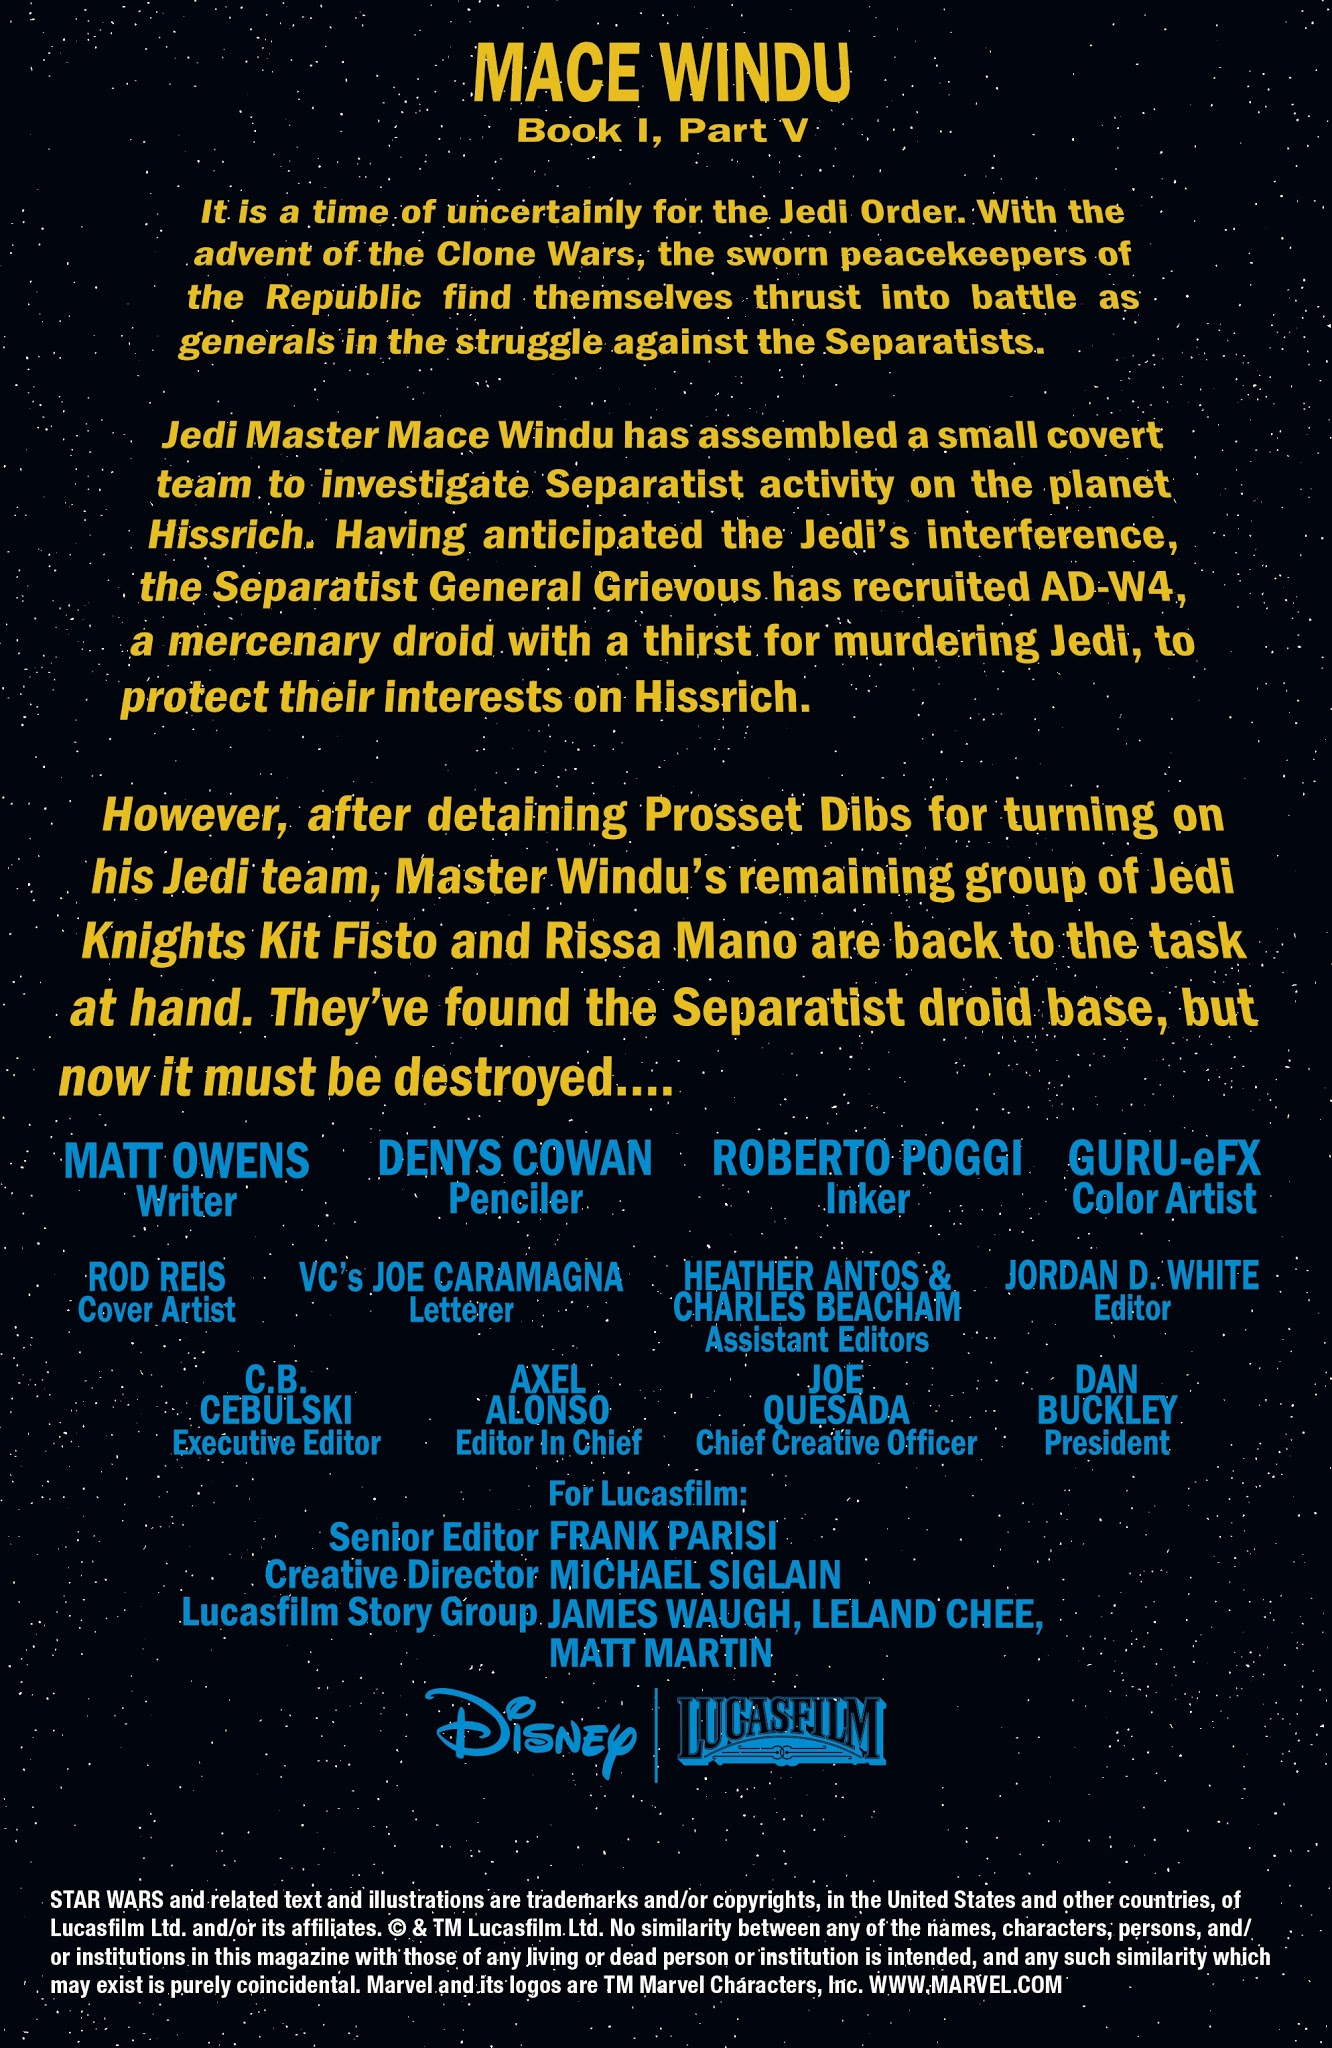 Read online Star Wars: Mace Windu comic -  Issue #5 - 2